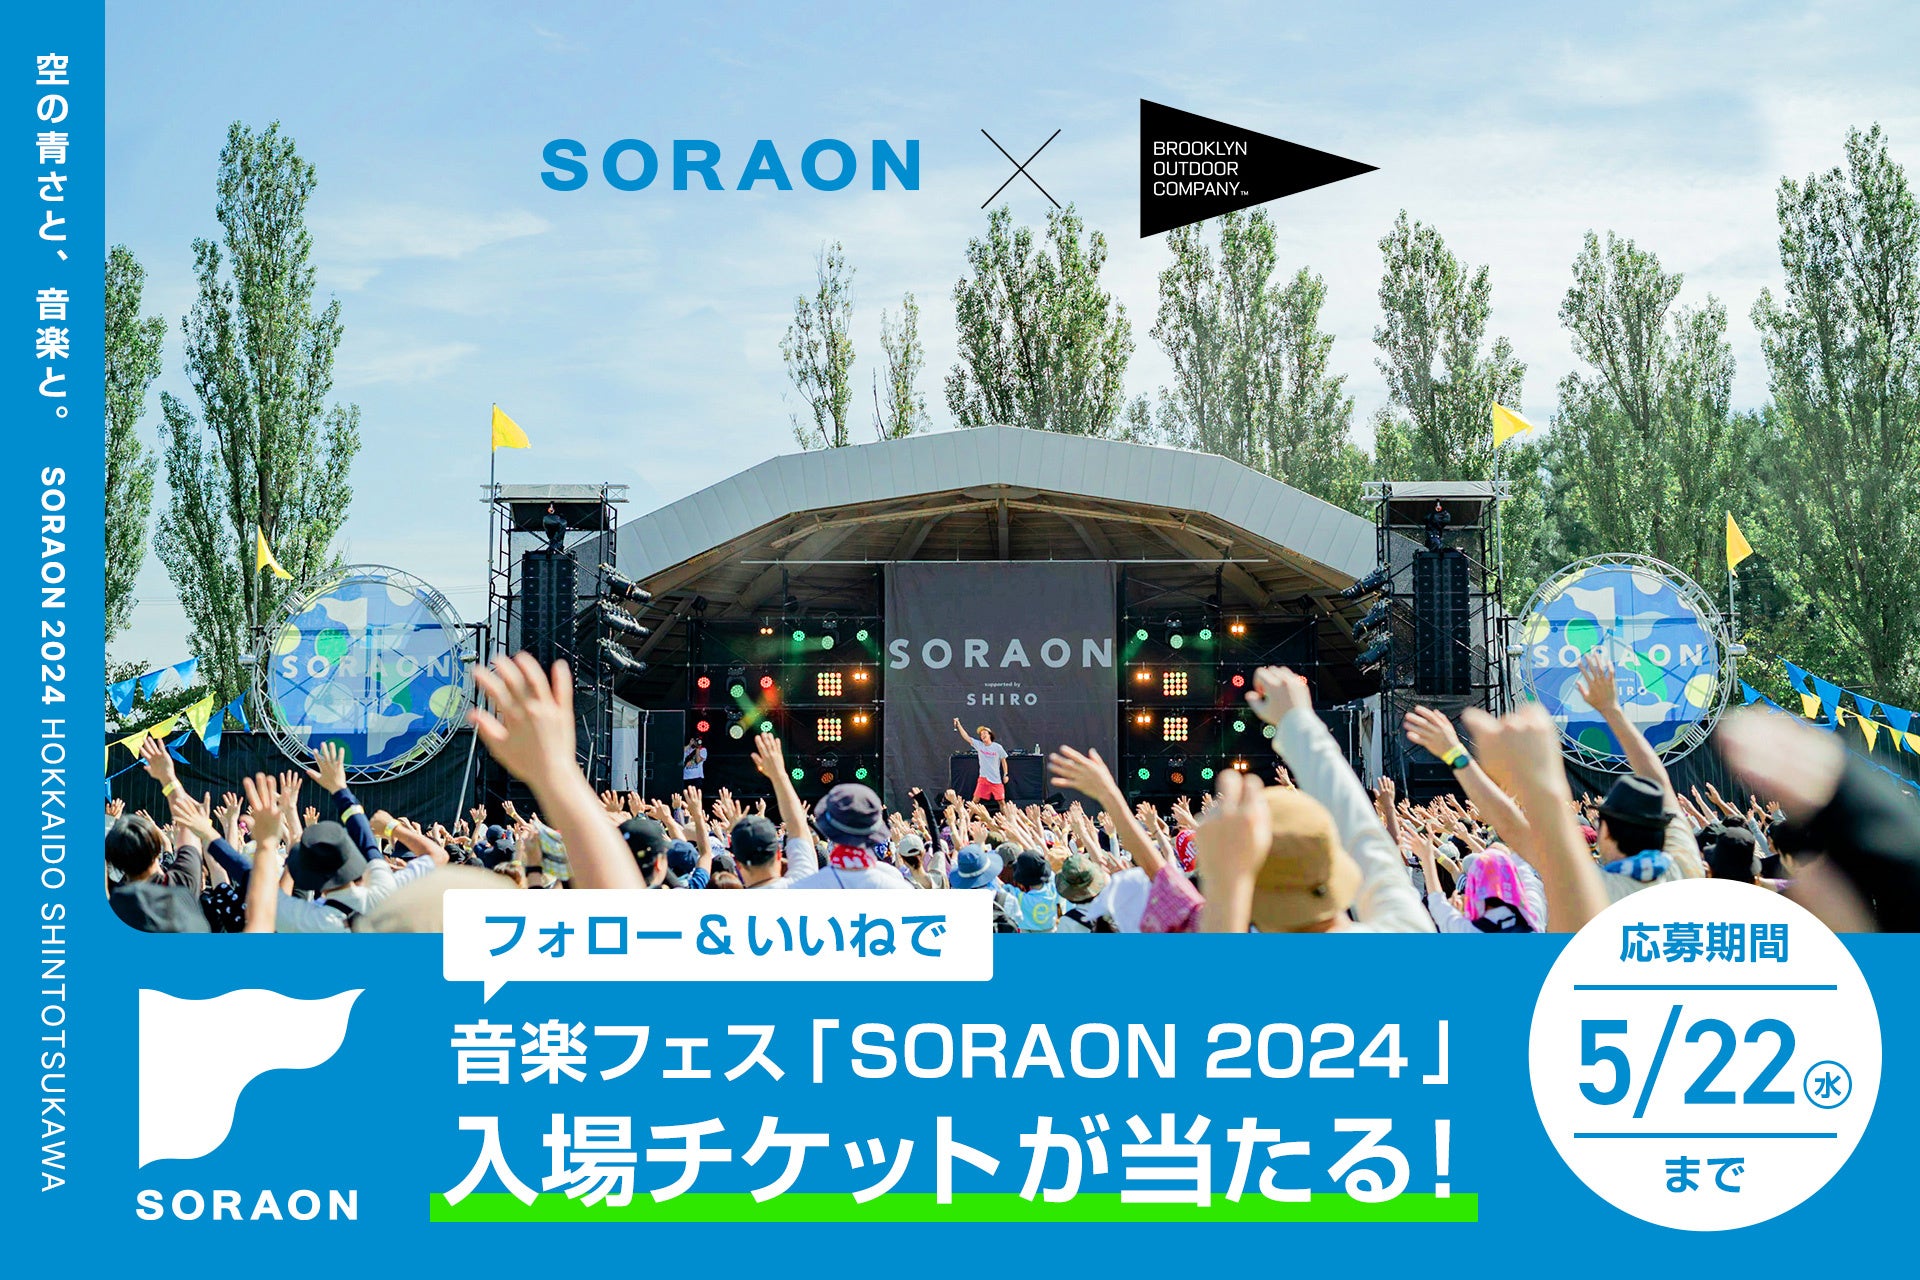 【2024年6月22日(土)・23日(日)開催】音楽フェス「SORAON 2024」に協賛